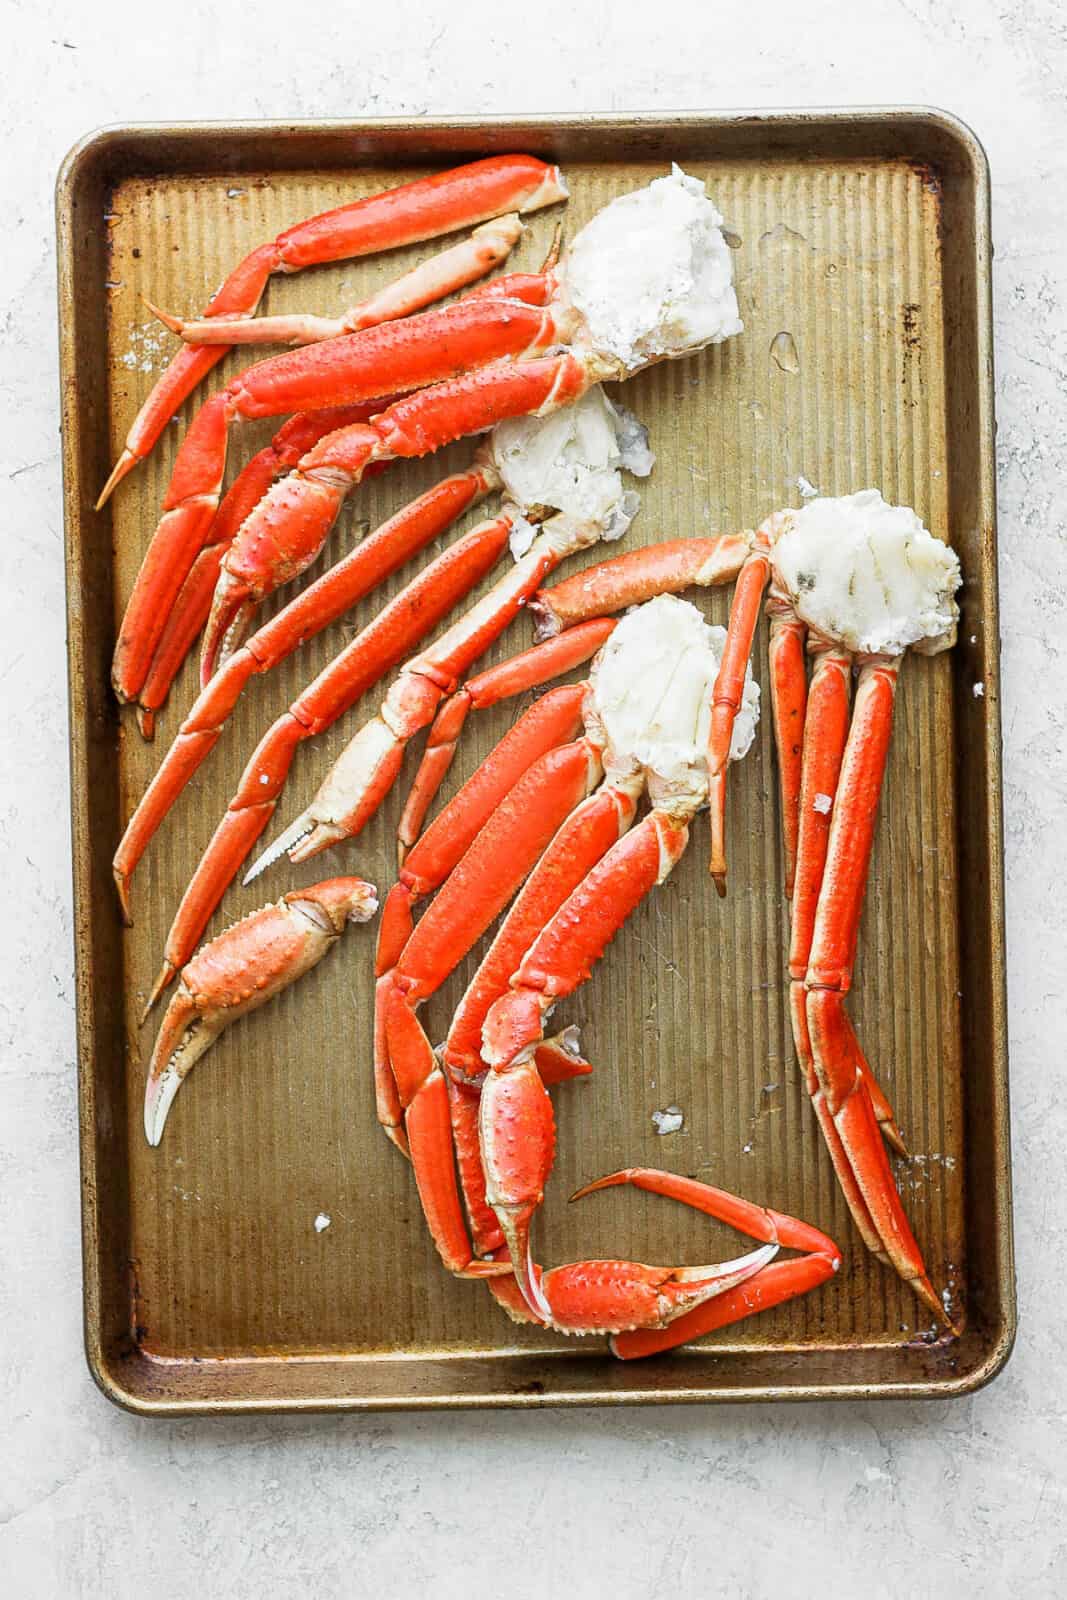 Crab legs thawing on a sheet pan.